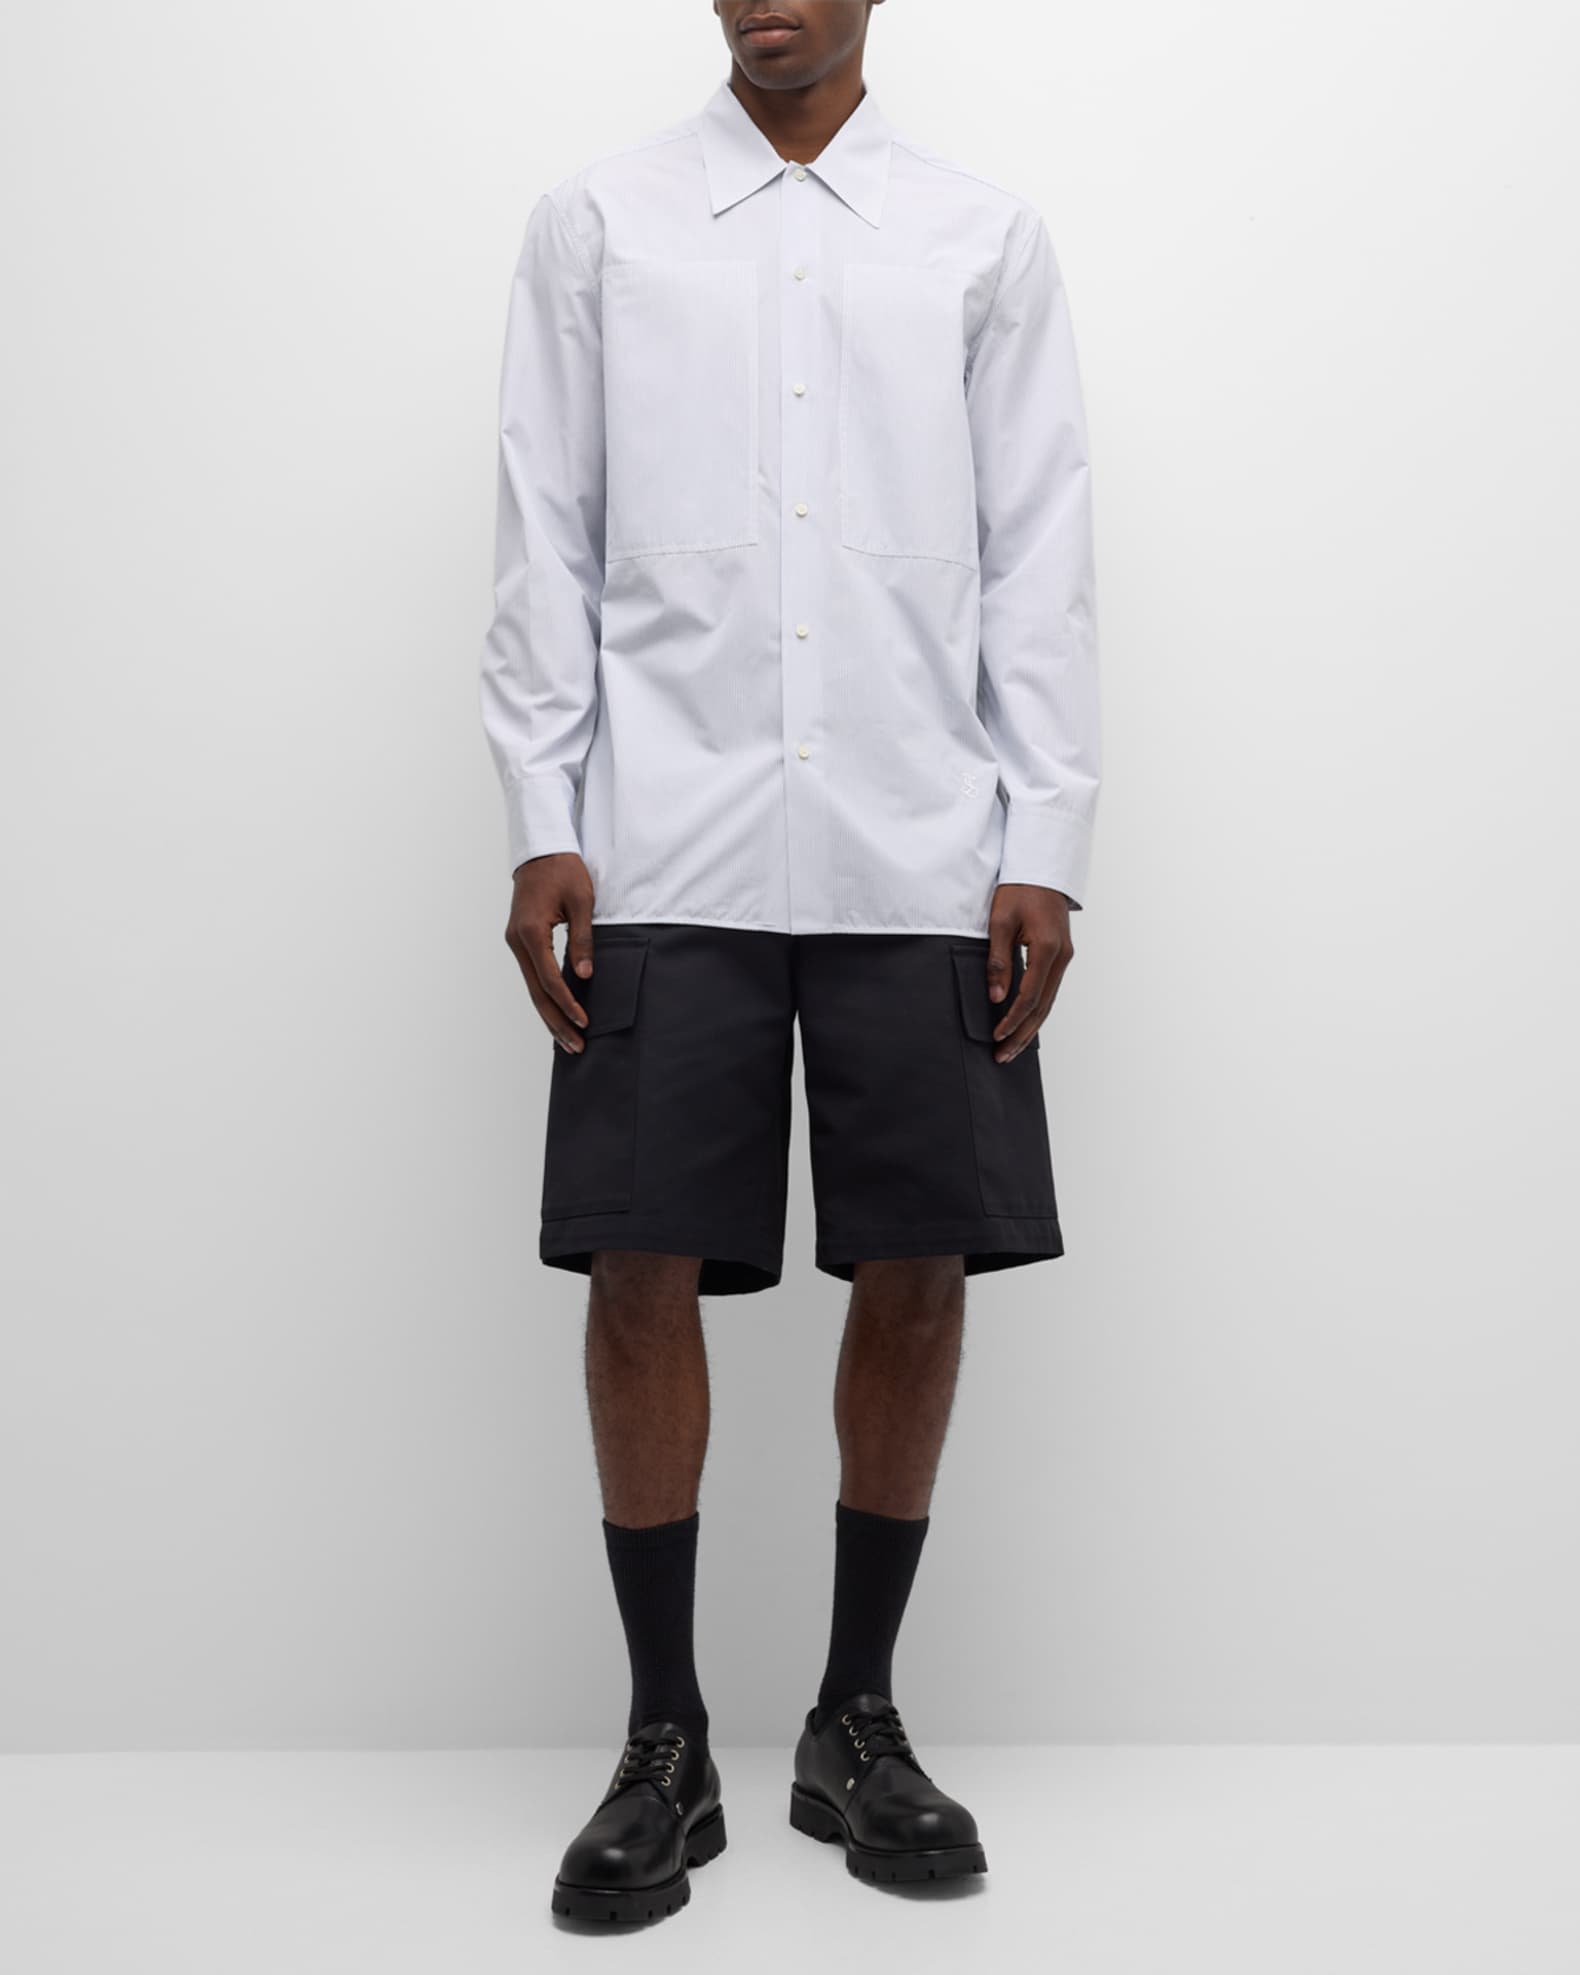 Jil Sander Men's Tuesday Striped Dress Shirt | Neiman Marcus